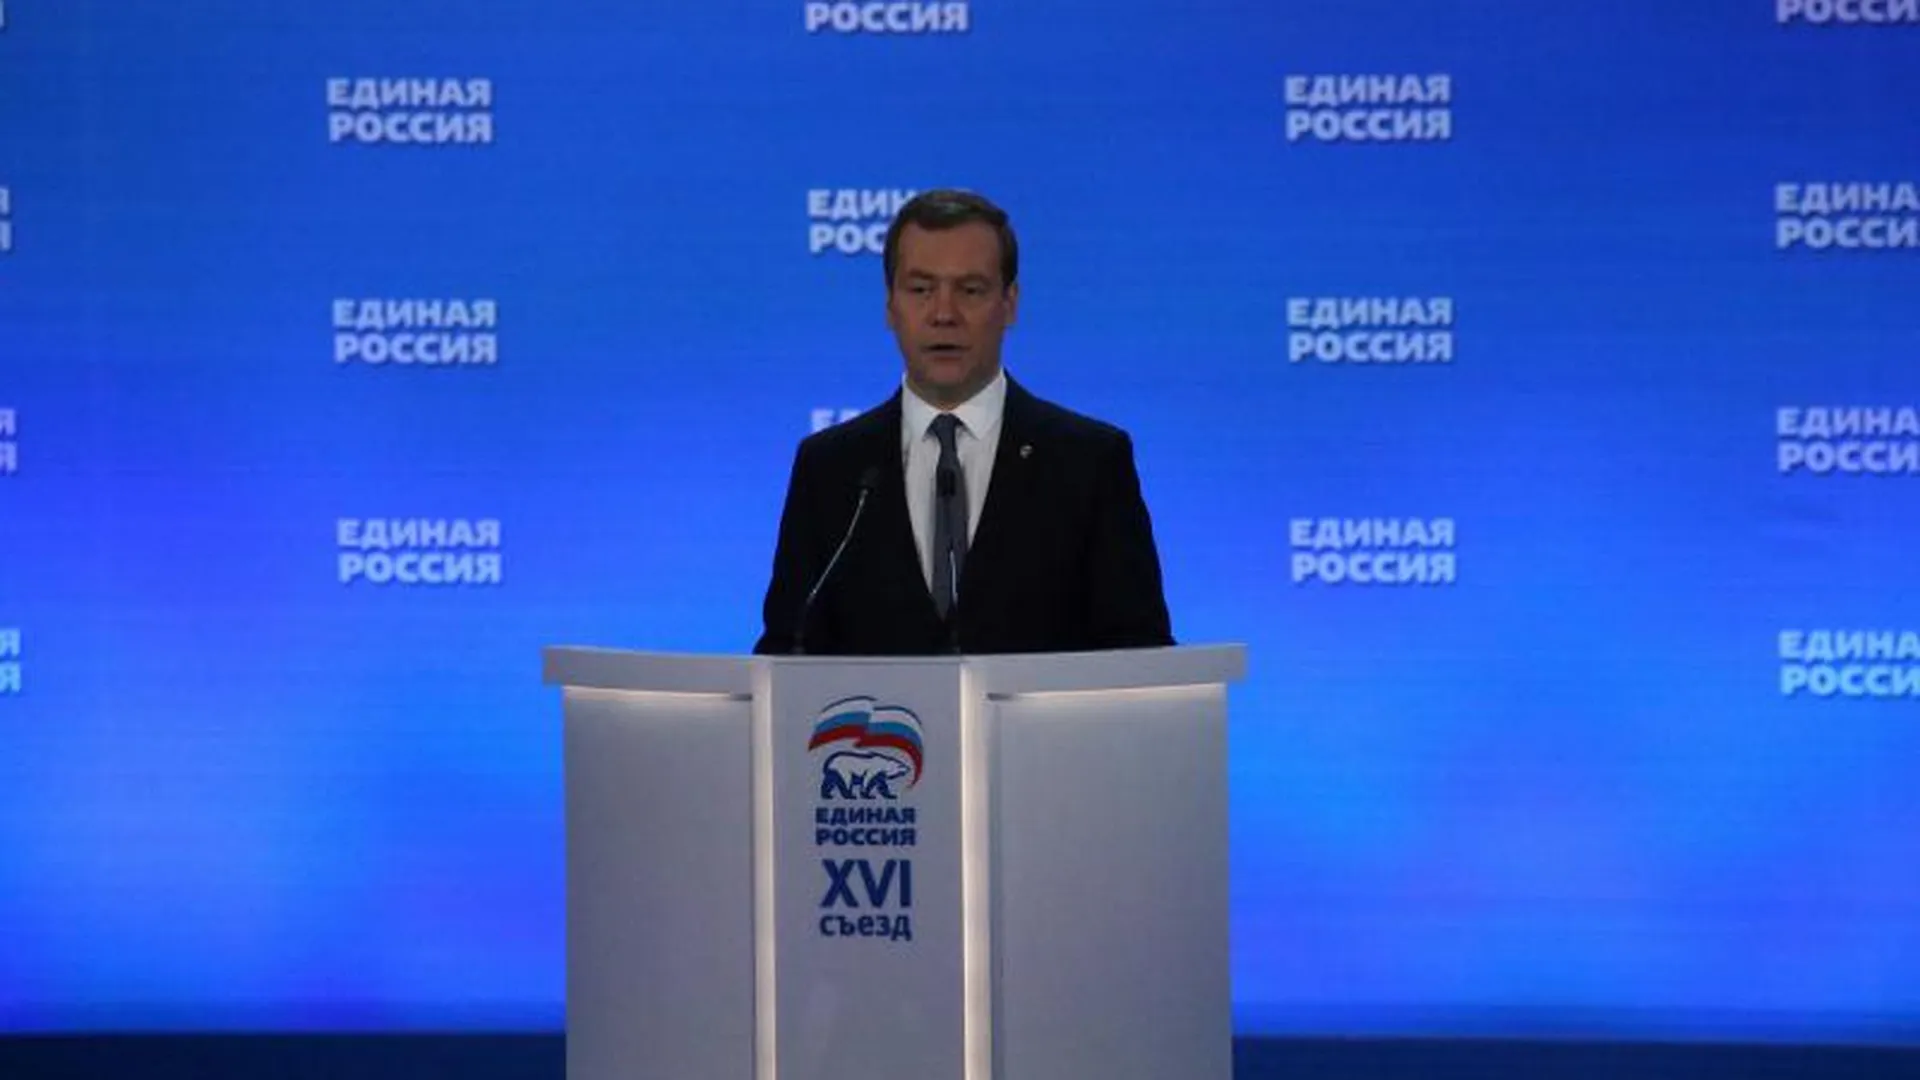 Медведев сохранил пост председателя партии «Единая Россия»